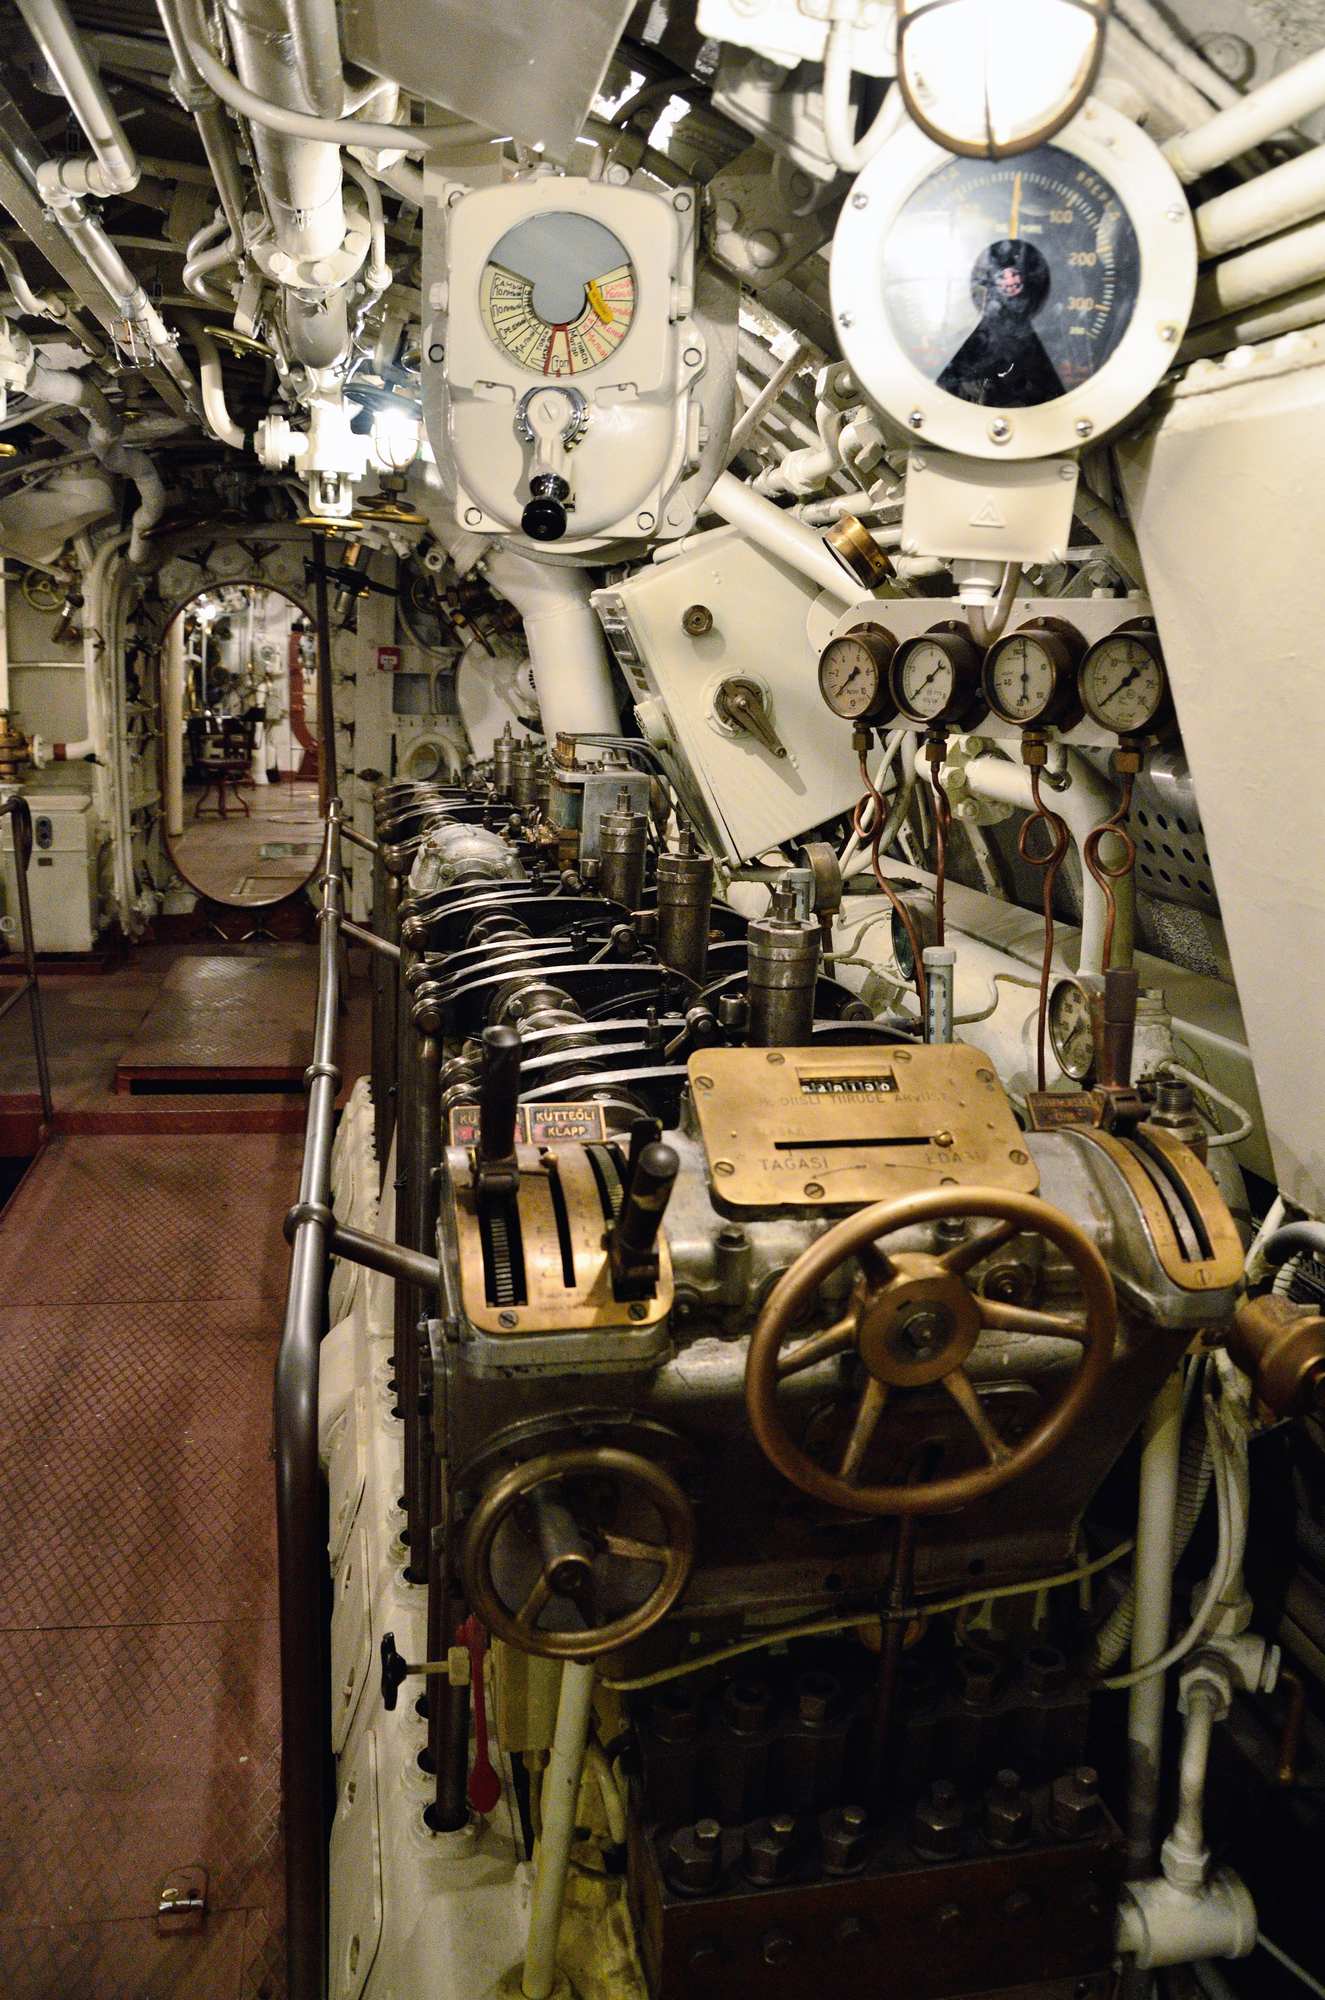 Летная гавань Леннусадам, подводная лодка Лембит